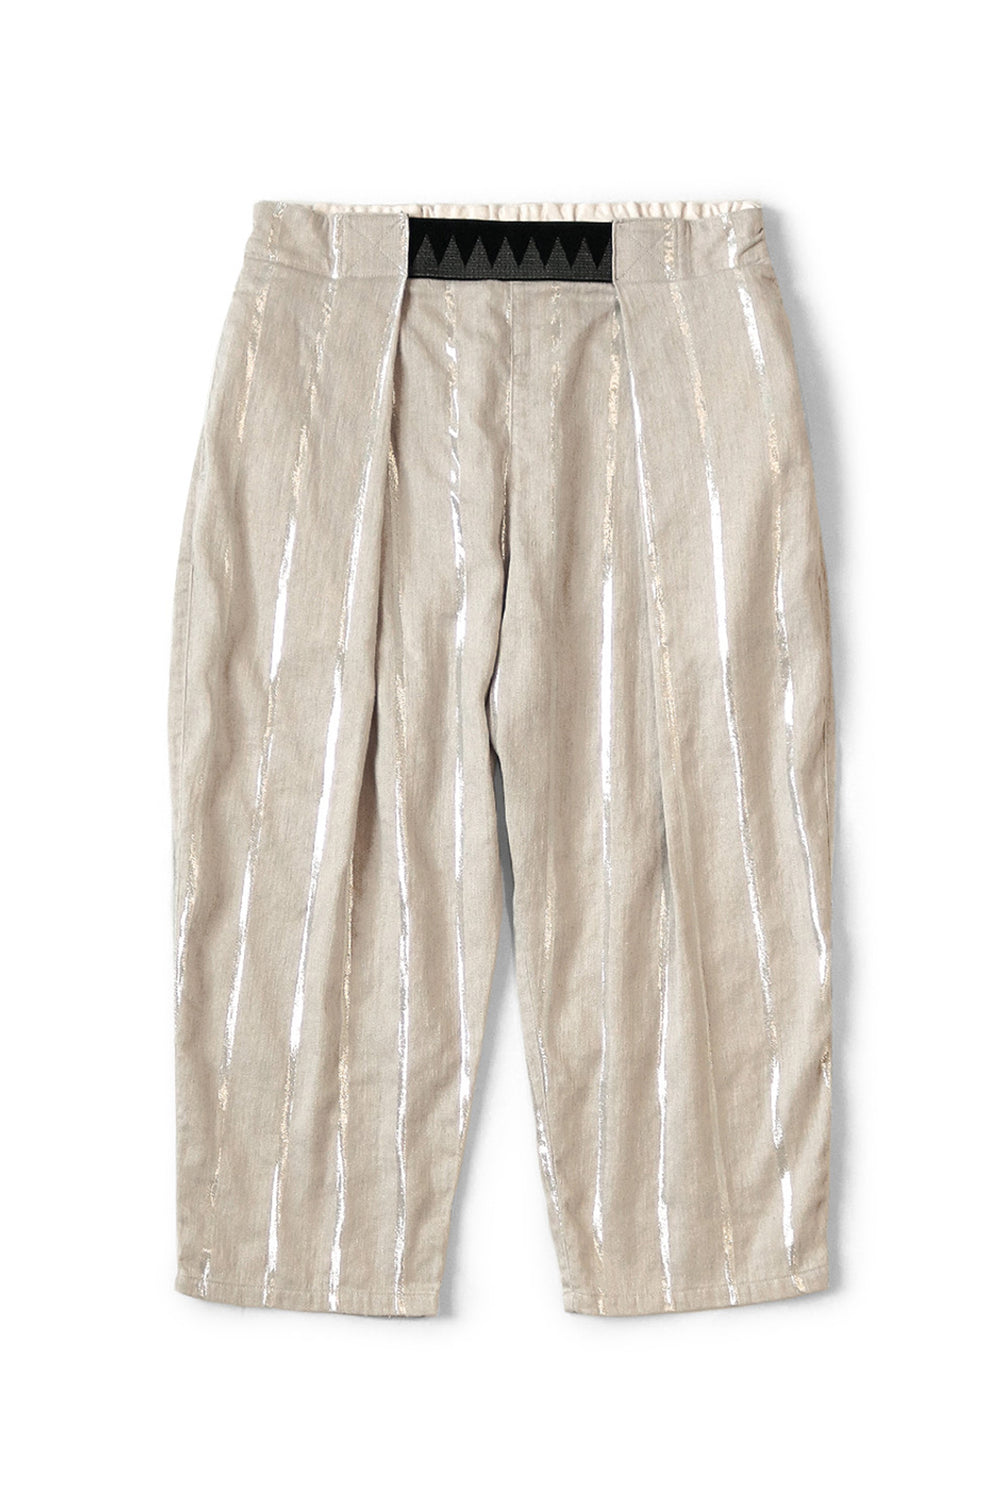 Linen Glitter PHILLIES Stripe EASY-BEACH-GO Pants